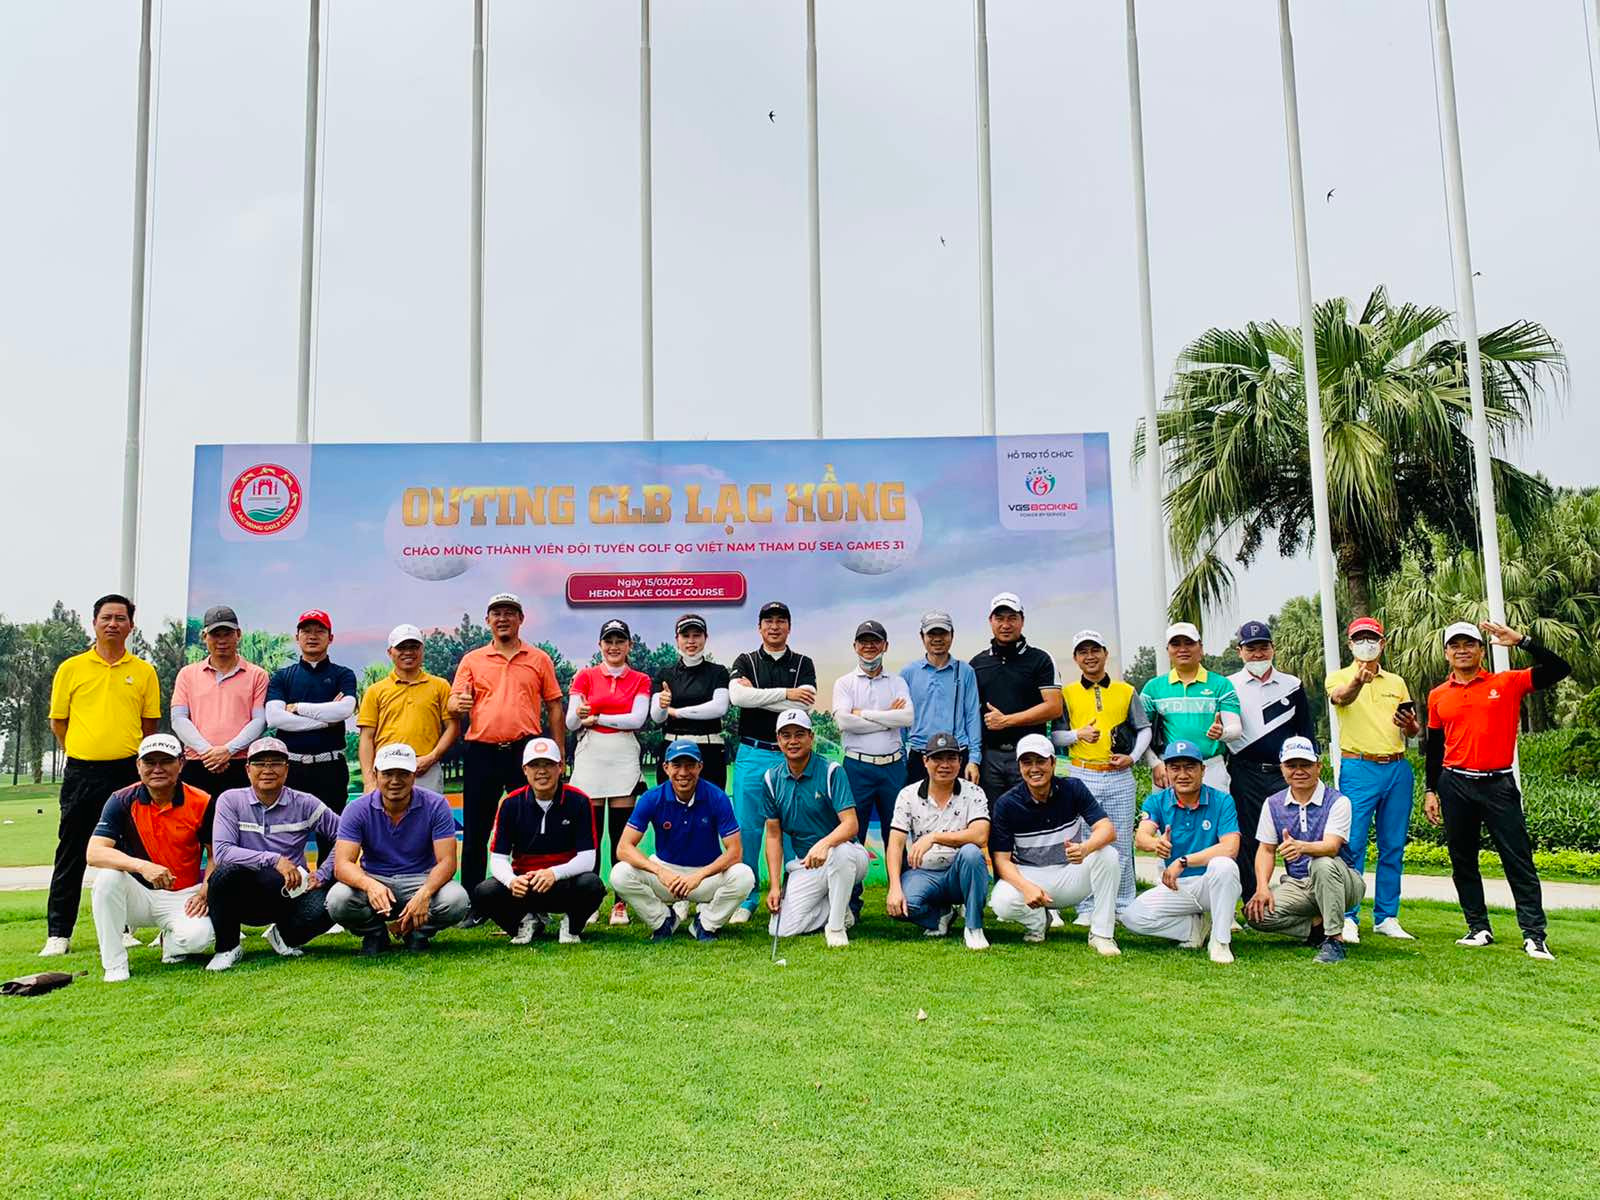 CLB Golf Lạc Hồng tổ chức Outing chúc mừng thành viên tham dự ĐTQG dự SEA Games 31 - Ảnh 1.